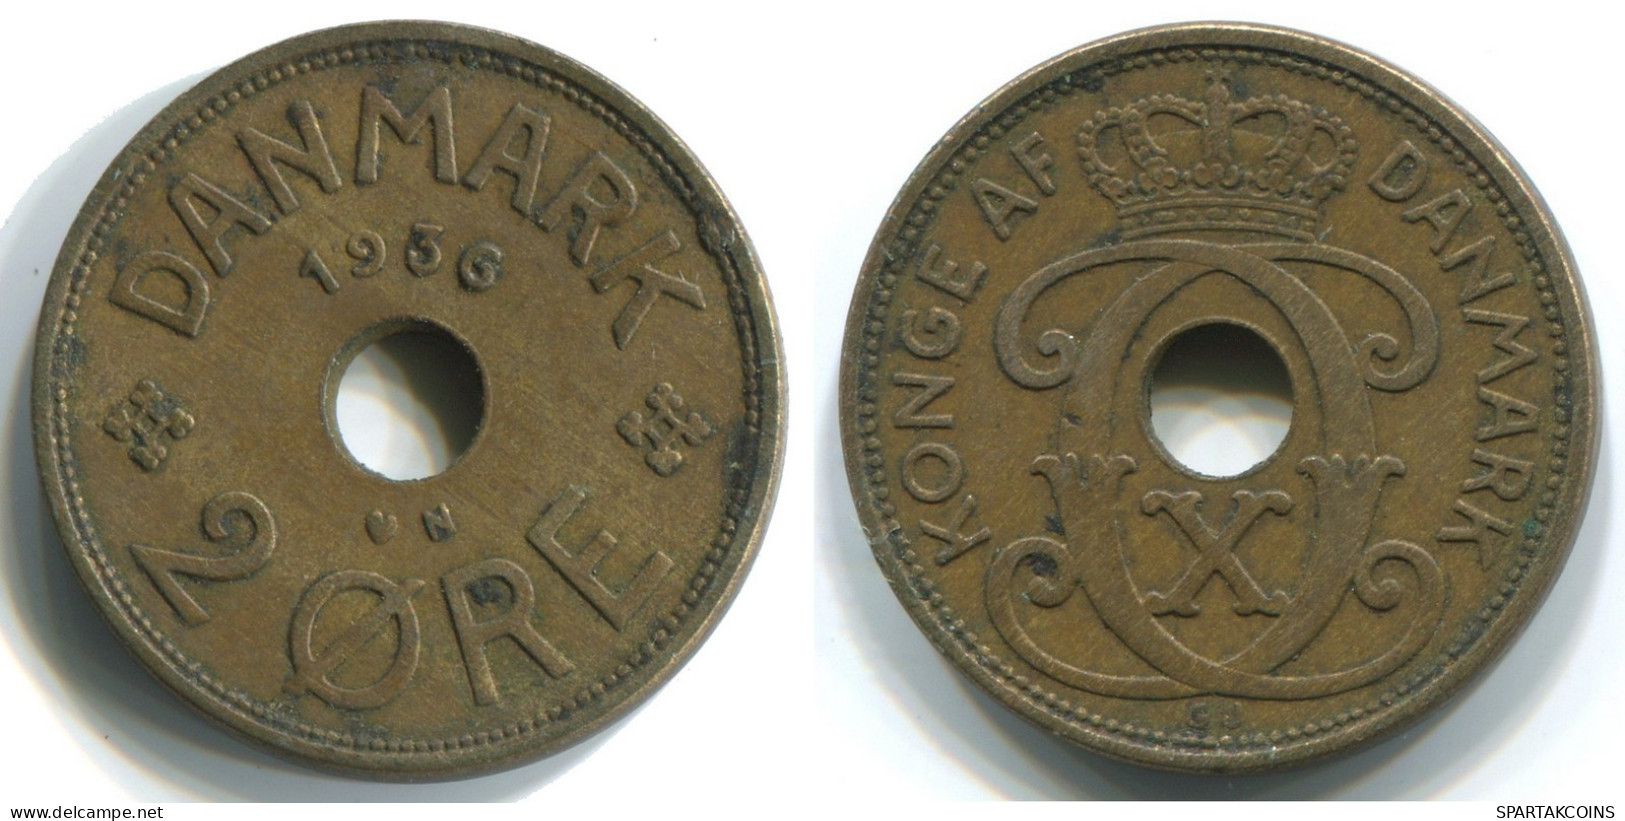 2 ORE 1936 DINAMARCA DENMARK Moneda #WW1011.E.A - Denmark